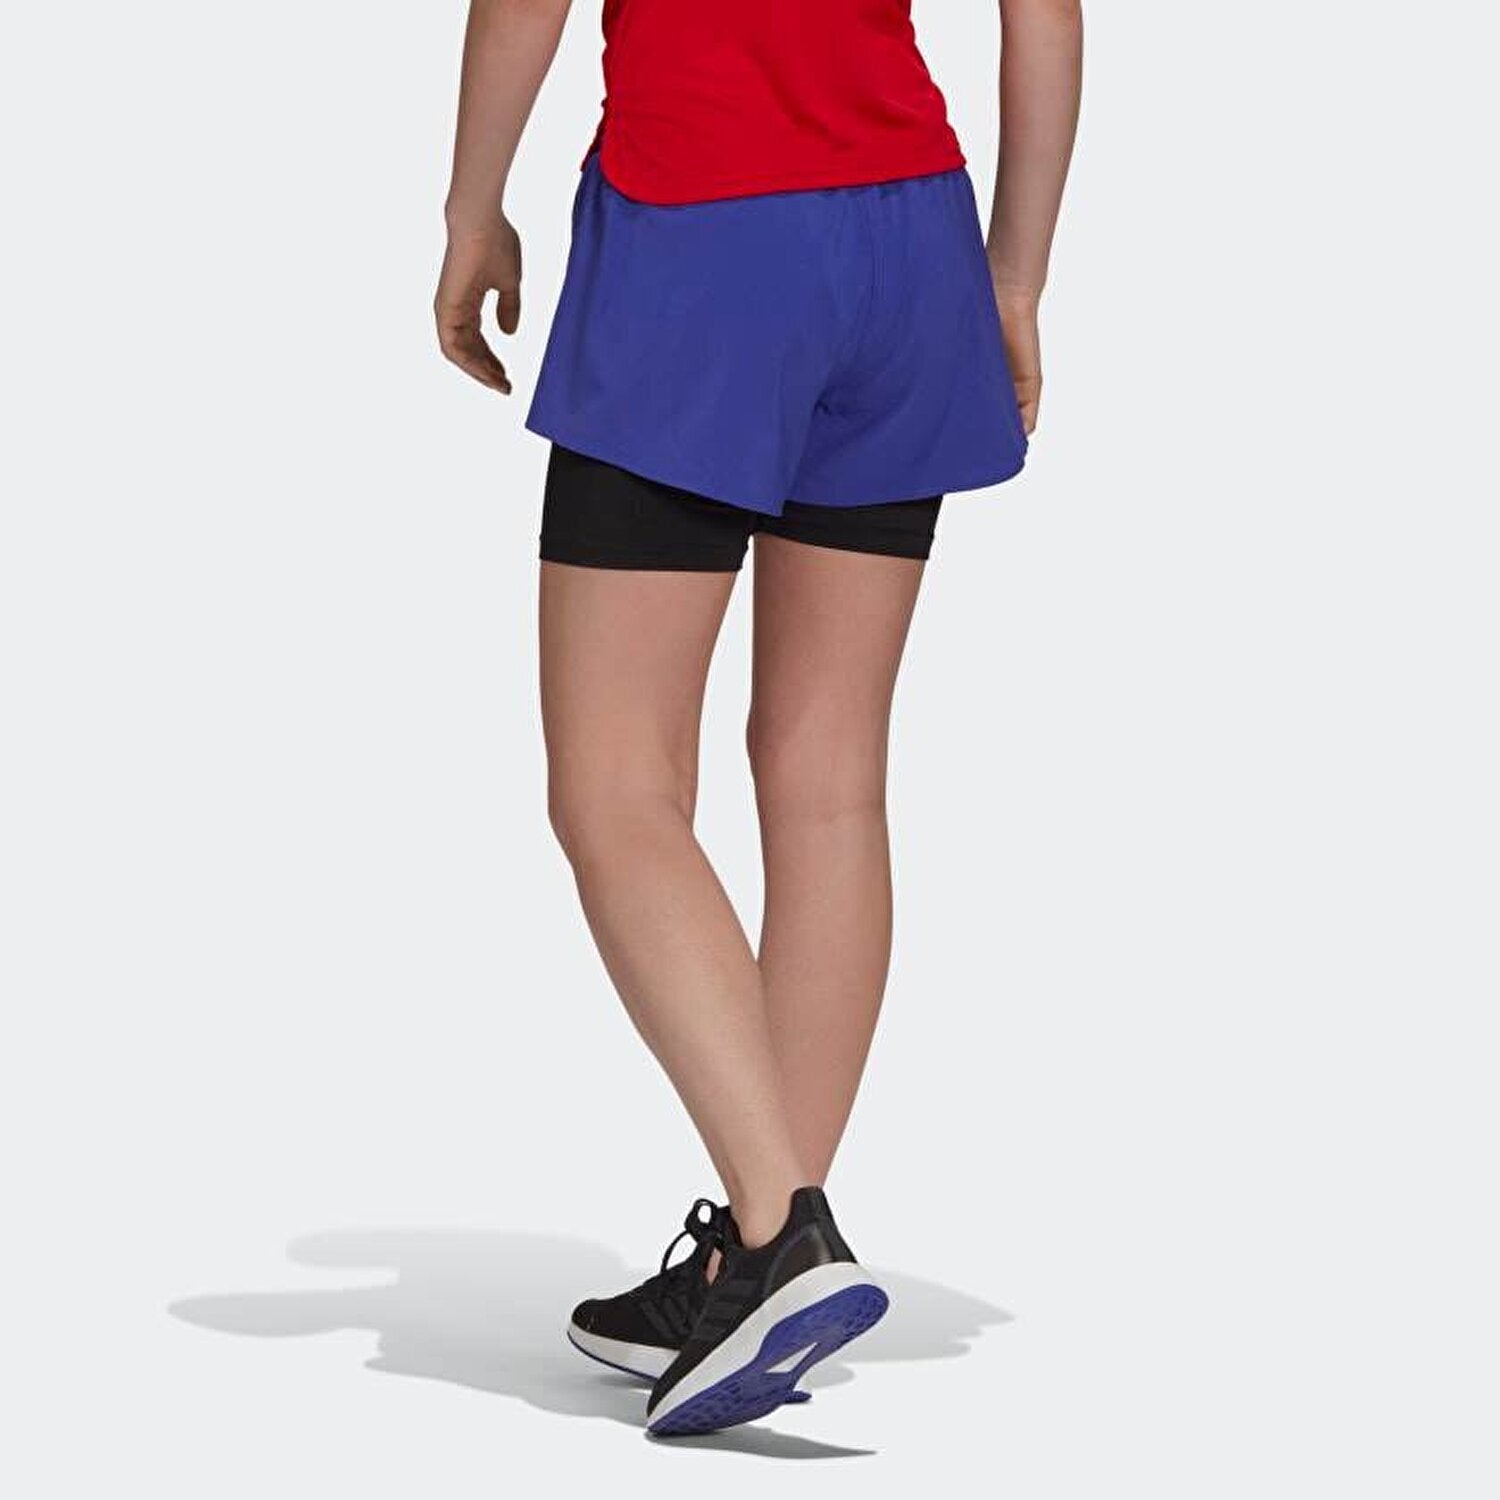 Adidas Areoready womens shorts